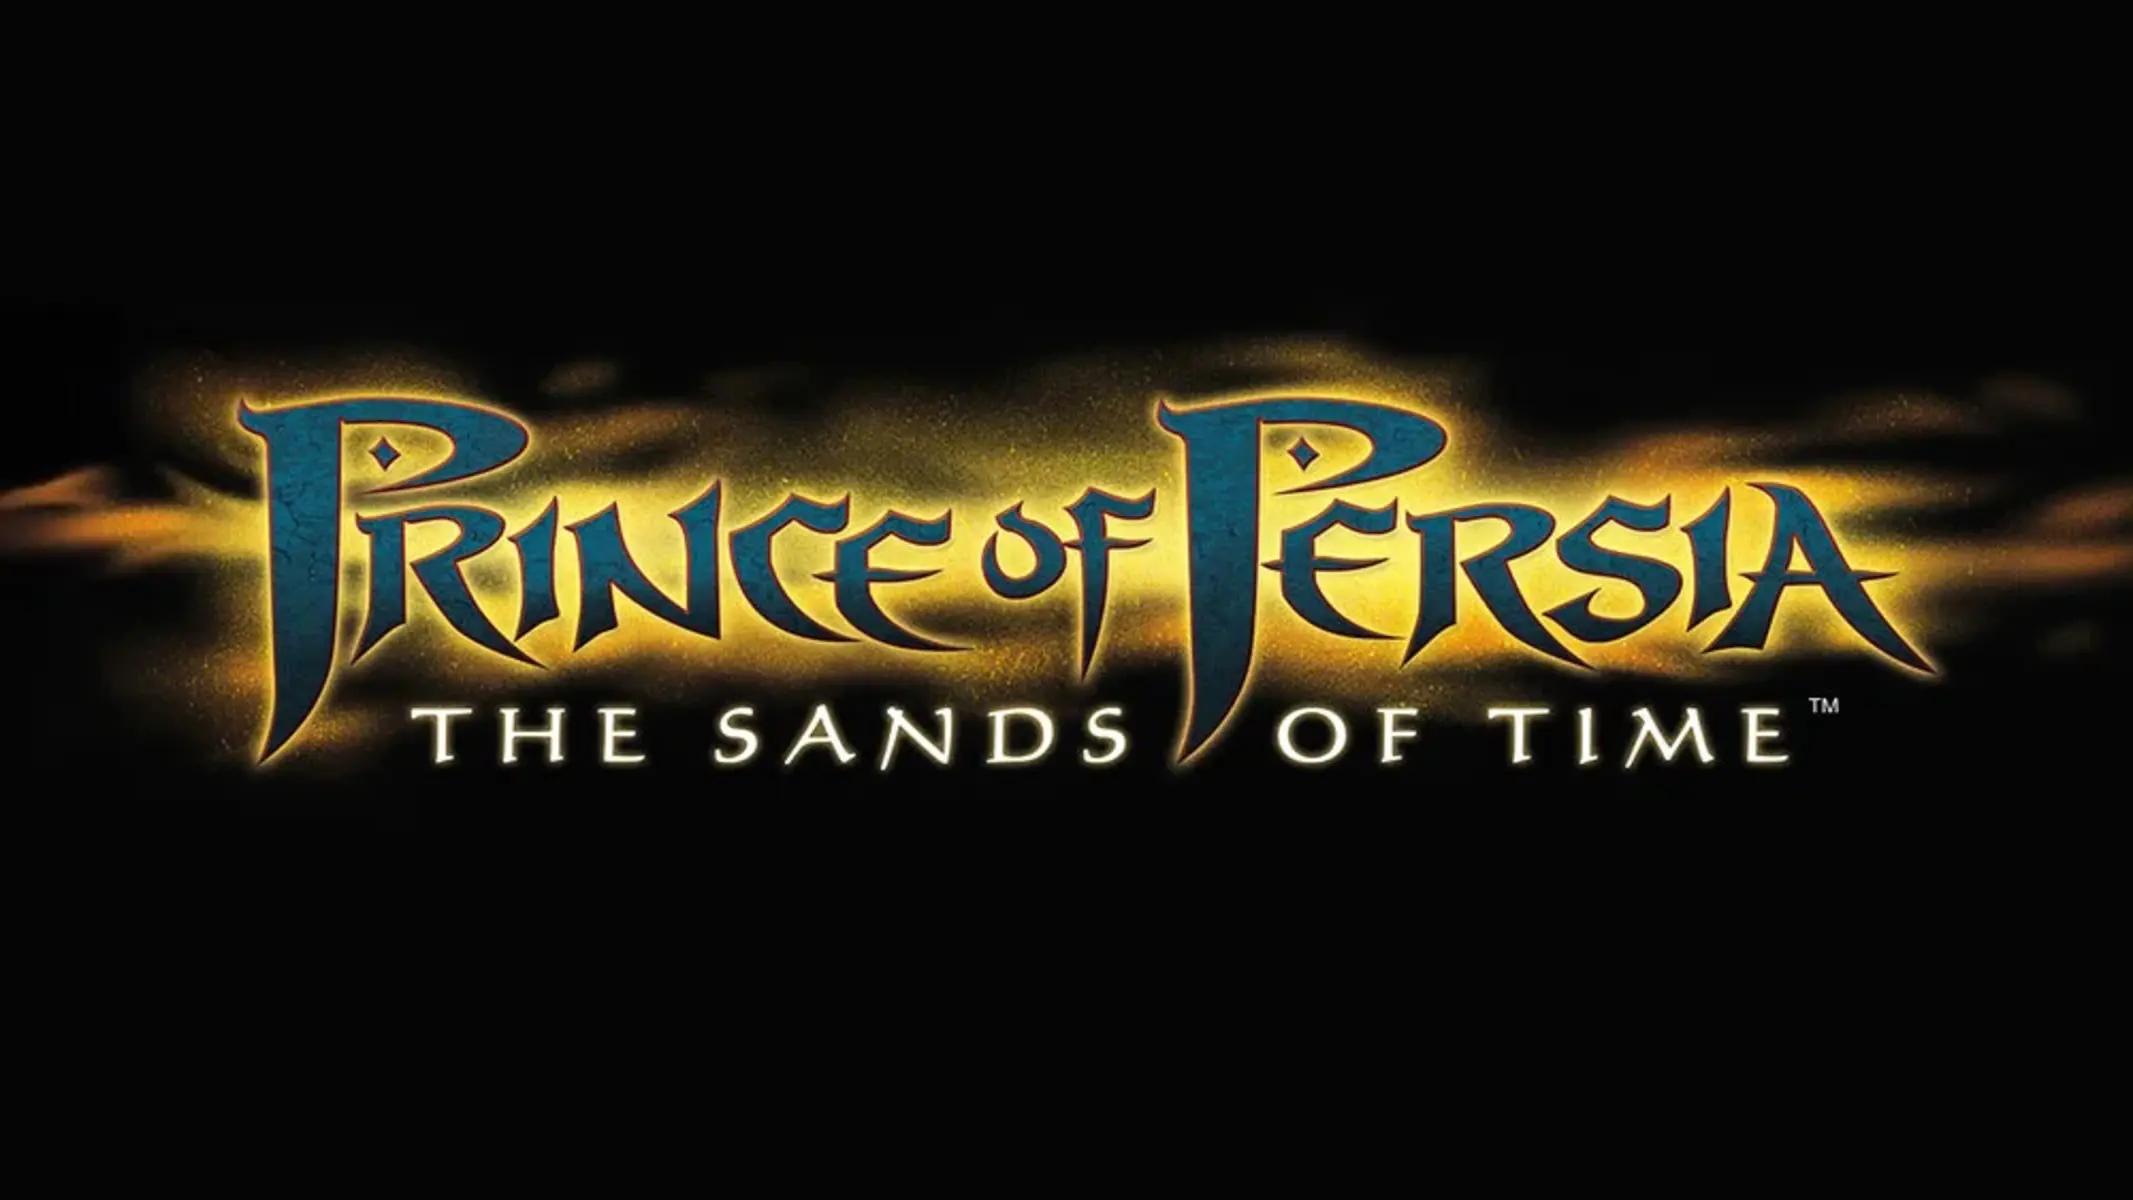 Prince of Persia: Le Sabbie del Tempo Remake